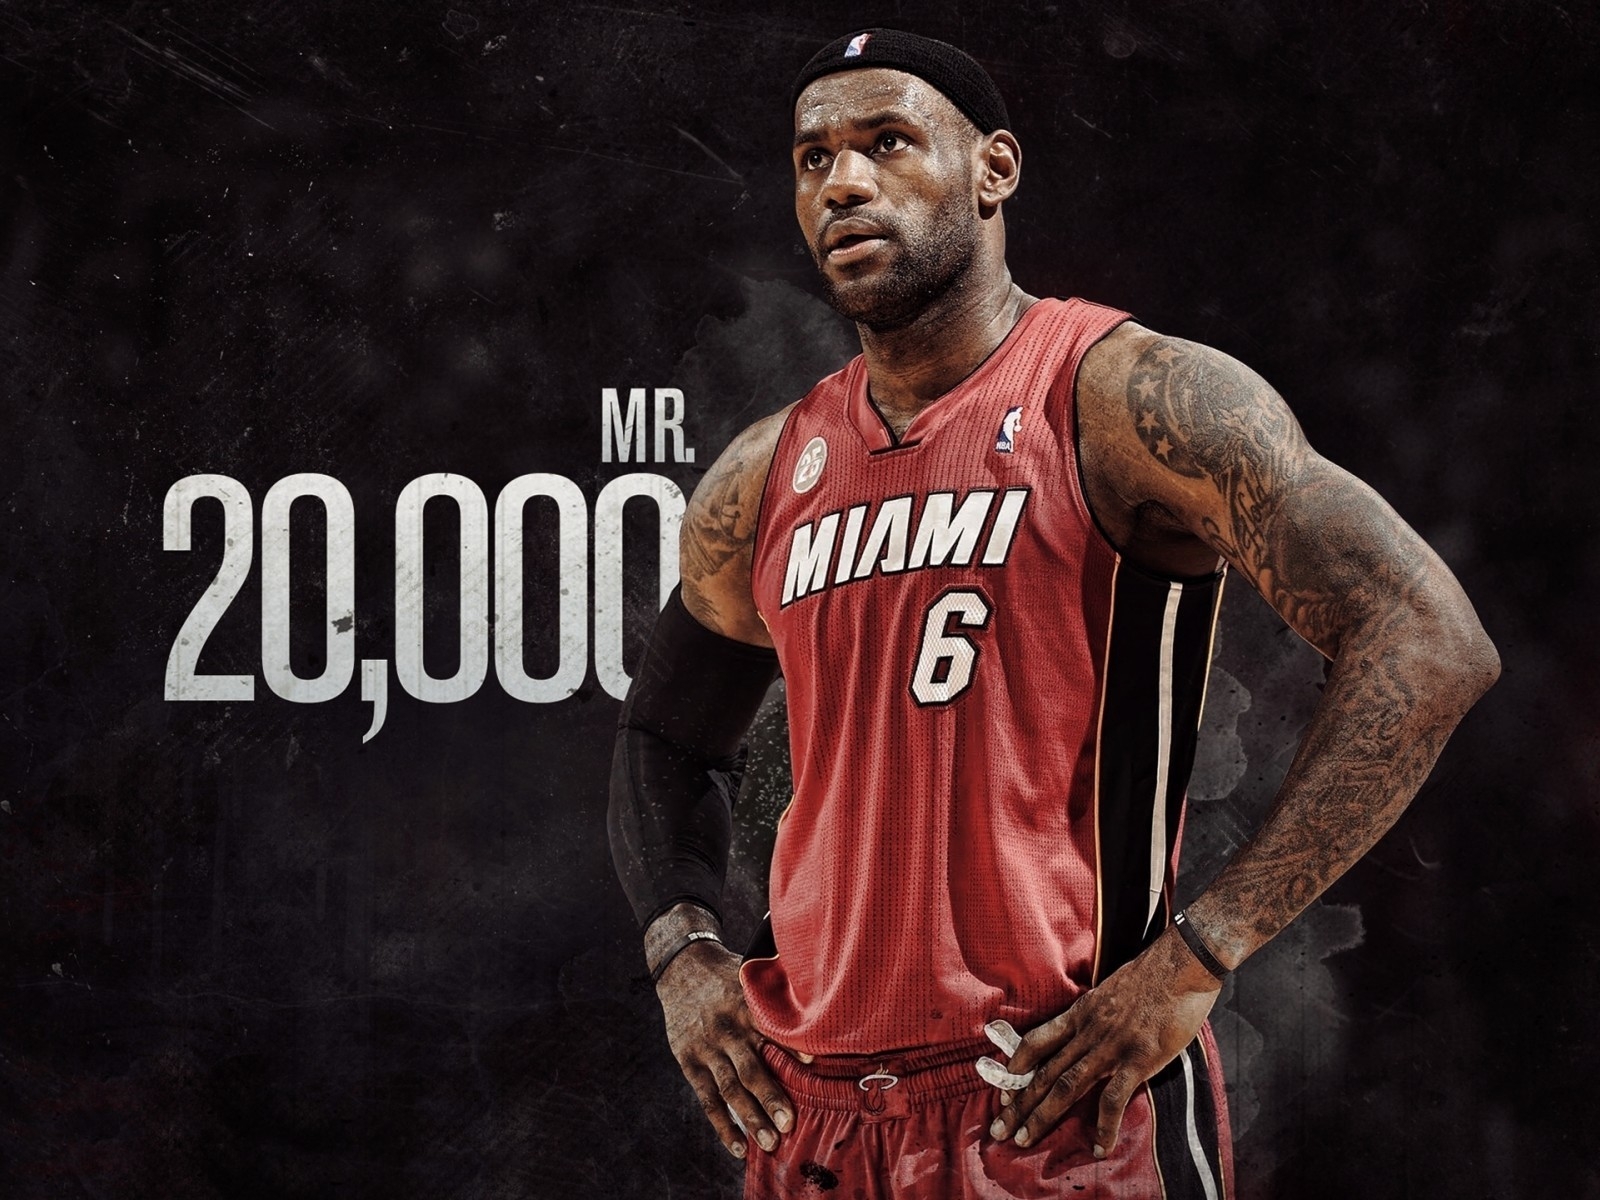 NBA LeBron James for 1600 x 1200 resolution